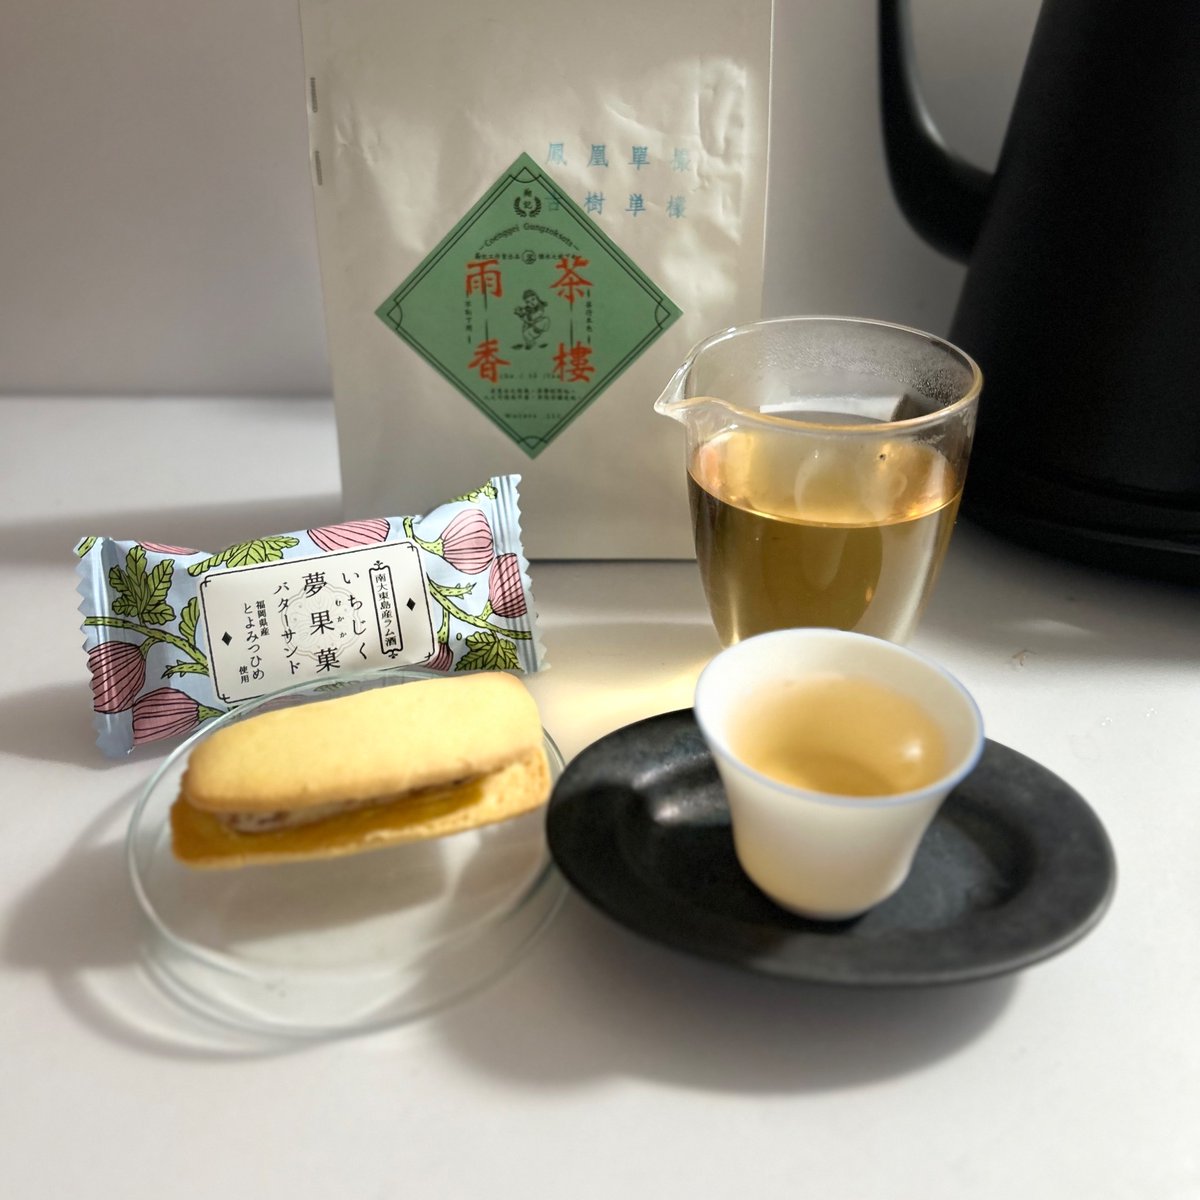 (茶樓雨香)古樹単叢蜜蘭香中坪村とFrau Atsuko Kayashinaいちじくバターサンド夢果菓食べます。
  #茶好連